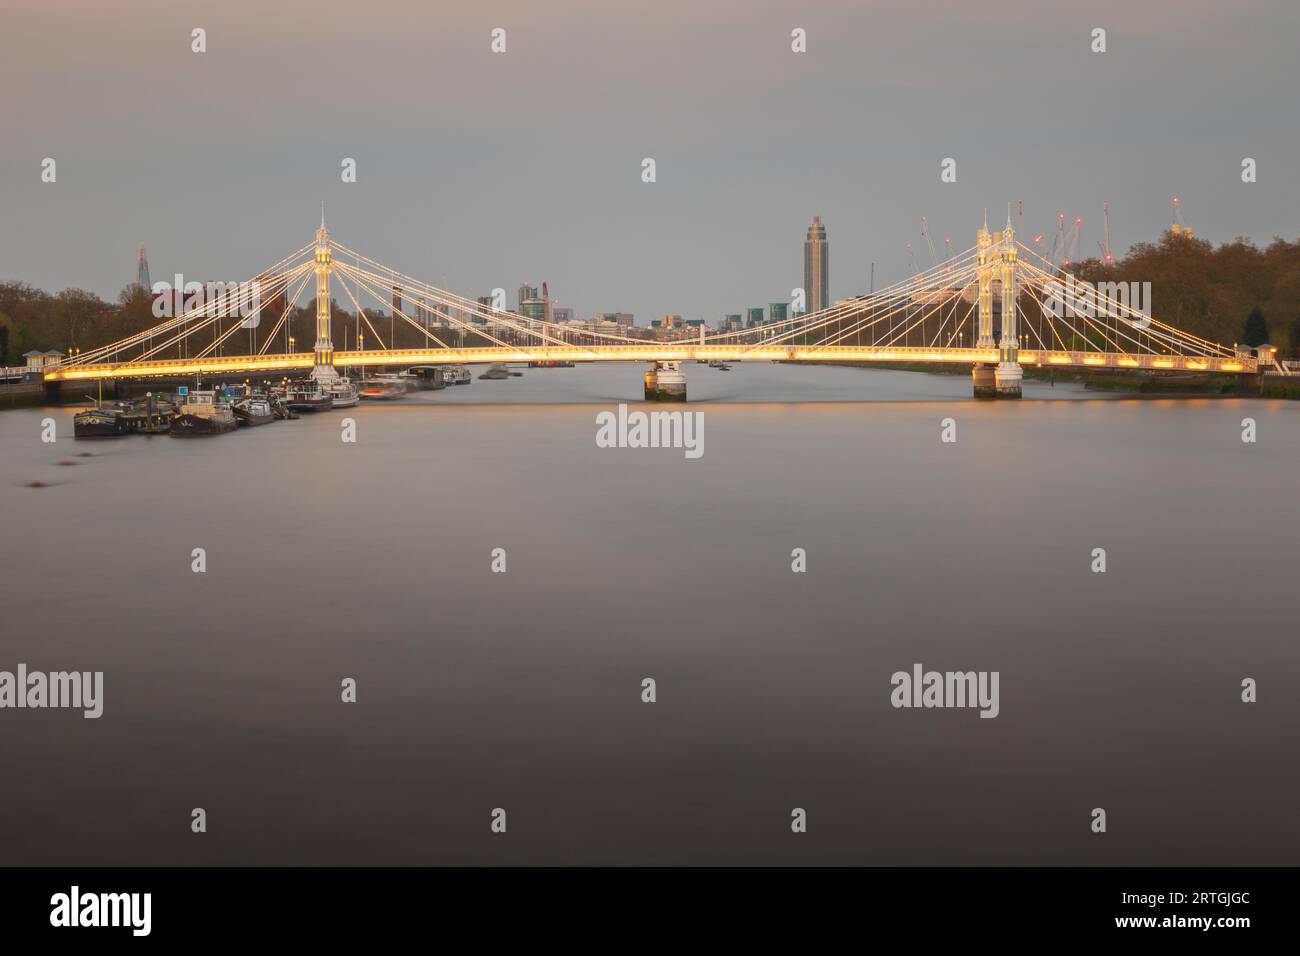 Longue exposition, pont Albert illuminé au-dessus de la Tamise à Londres Banque D'Images